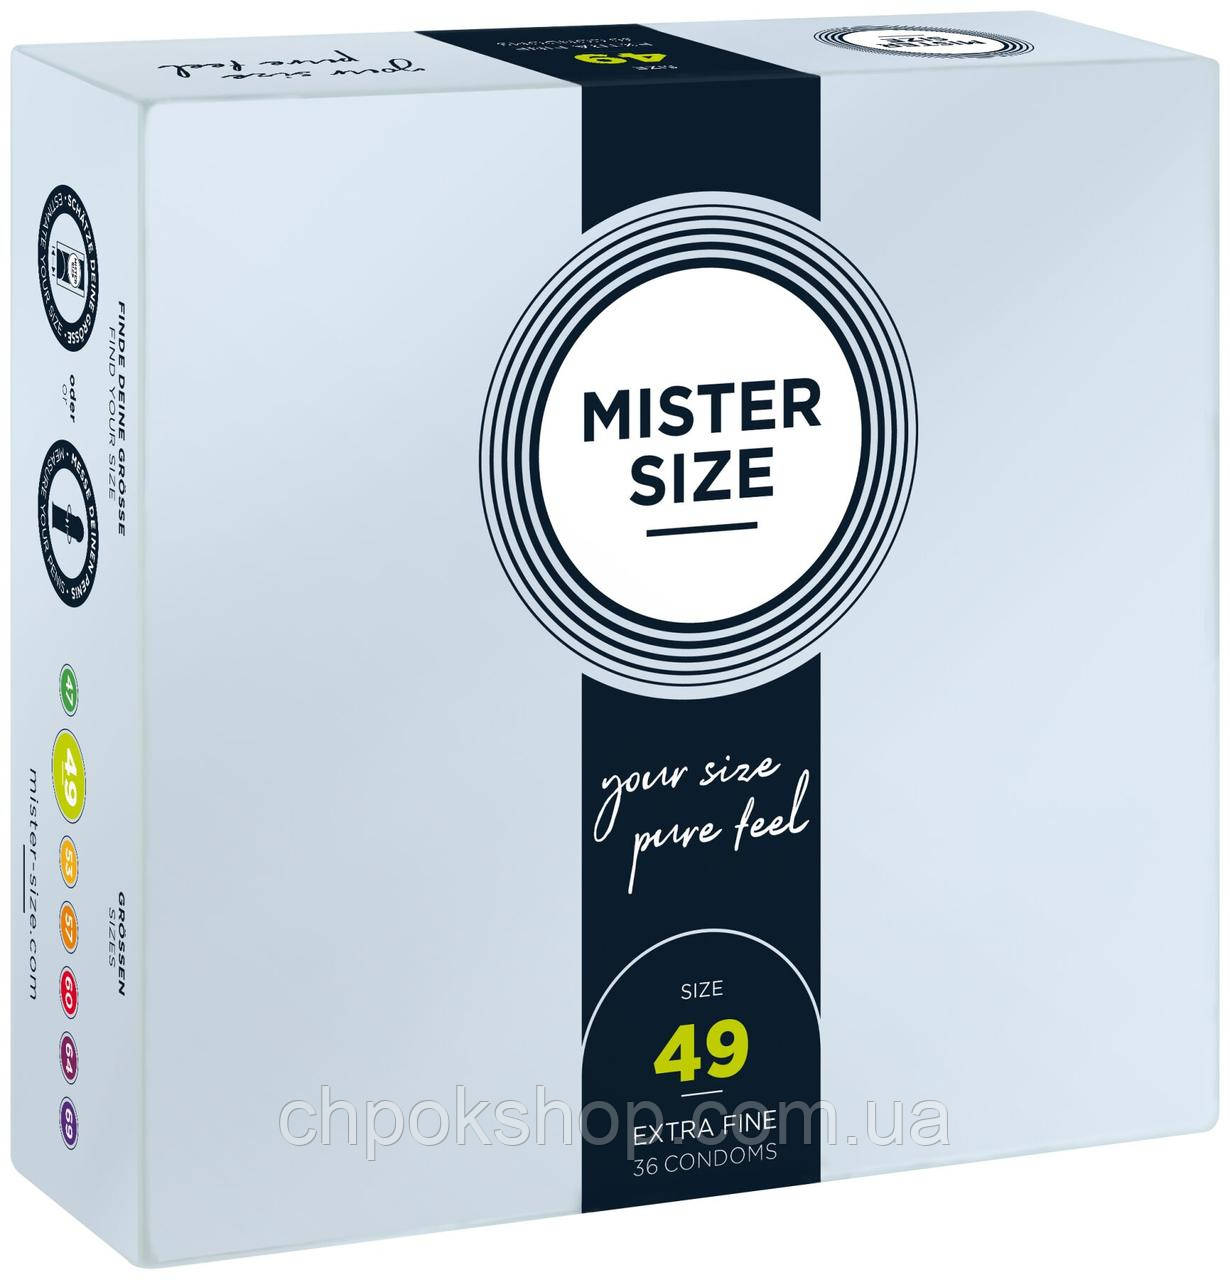 Презервативи Mister Size — pure feel — 49 (36 condoms), товщина 0,05 мм